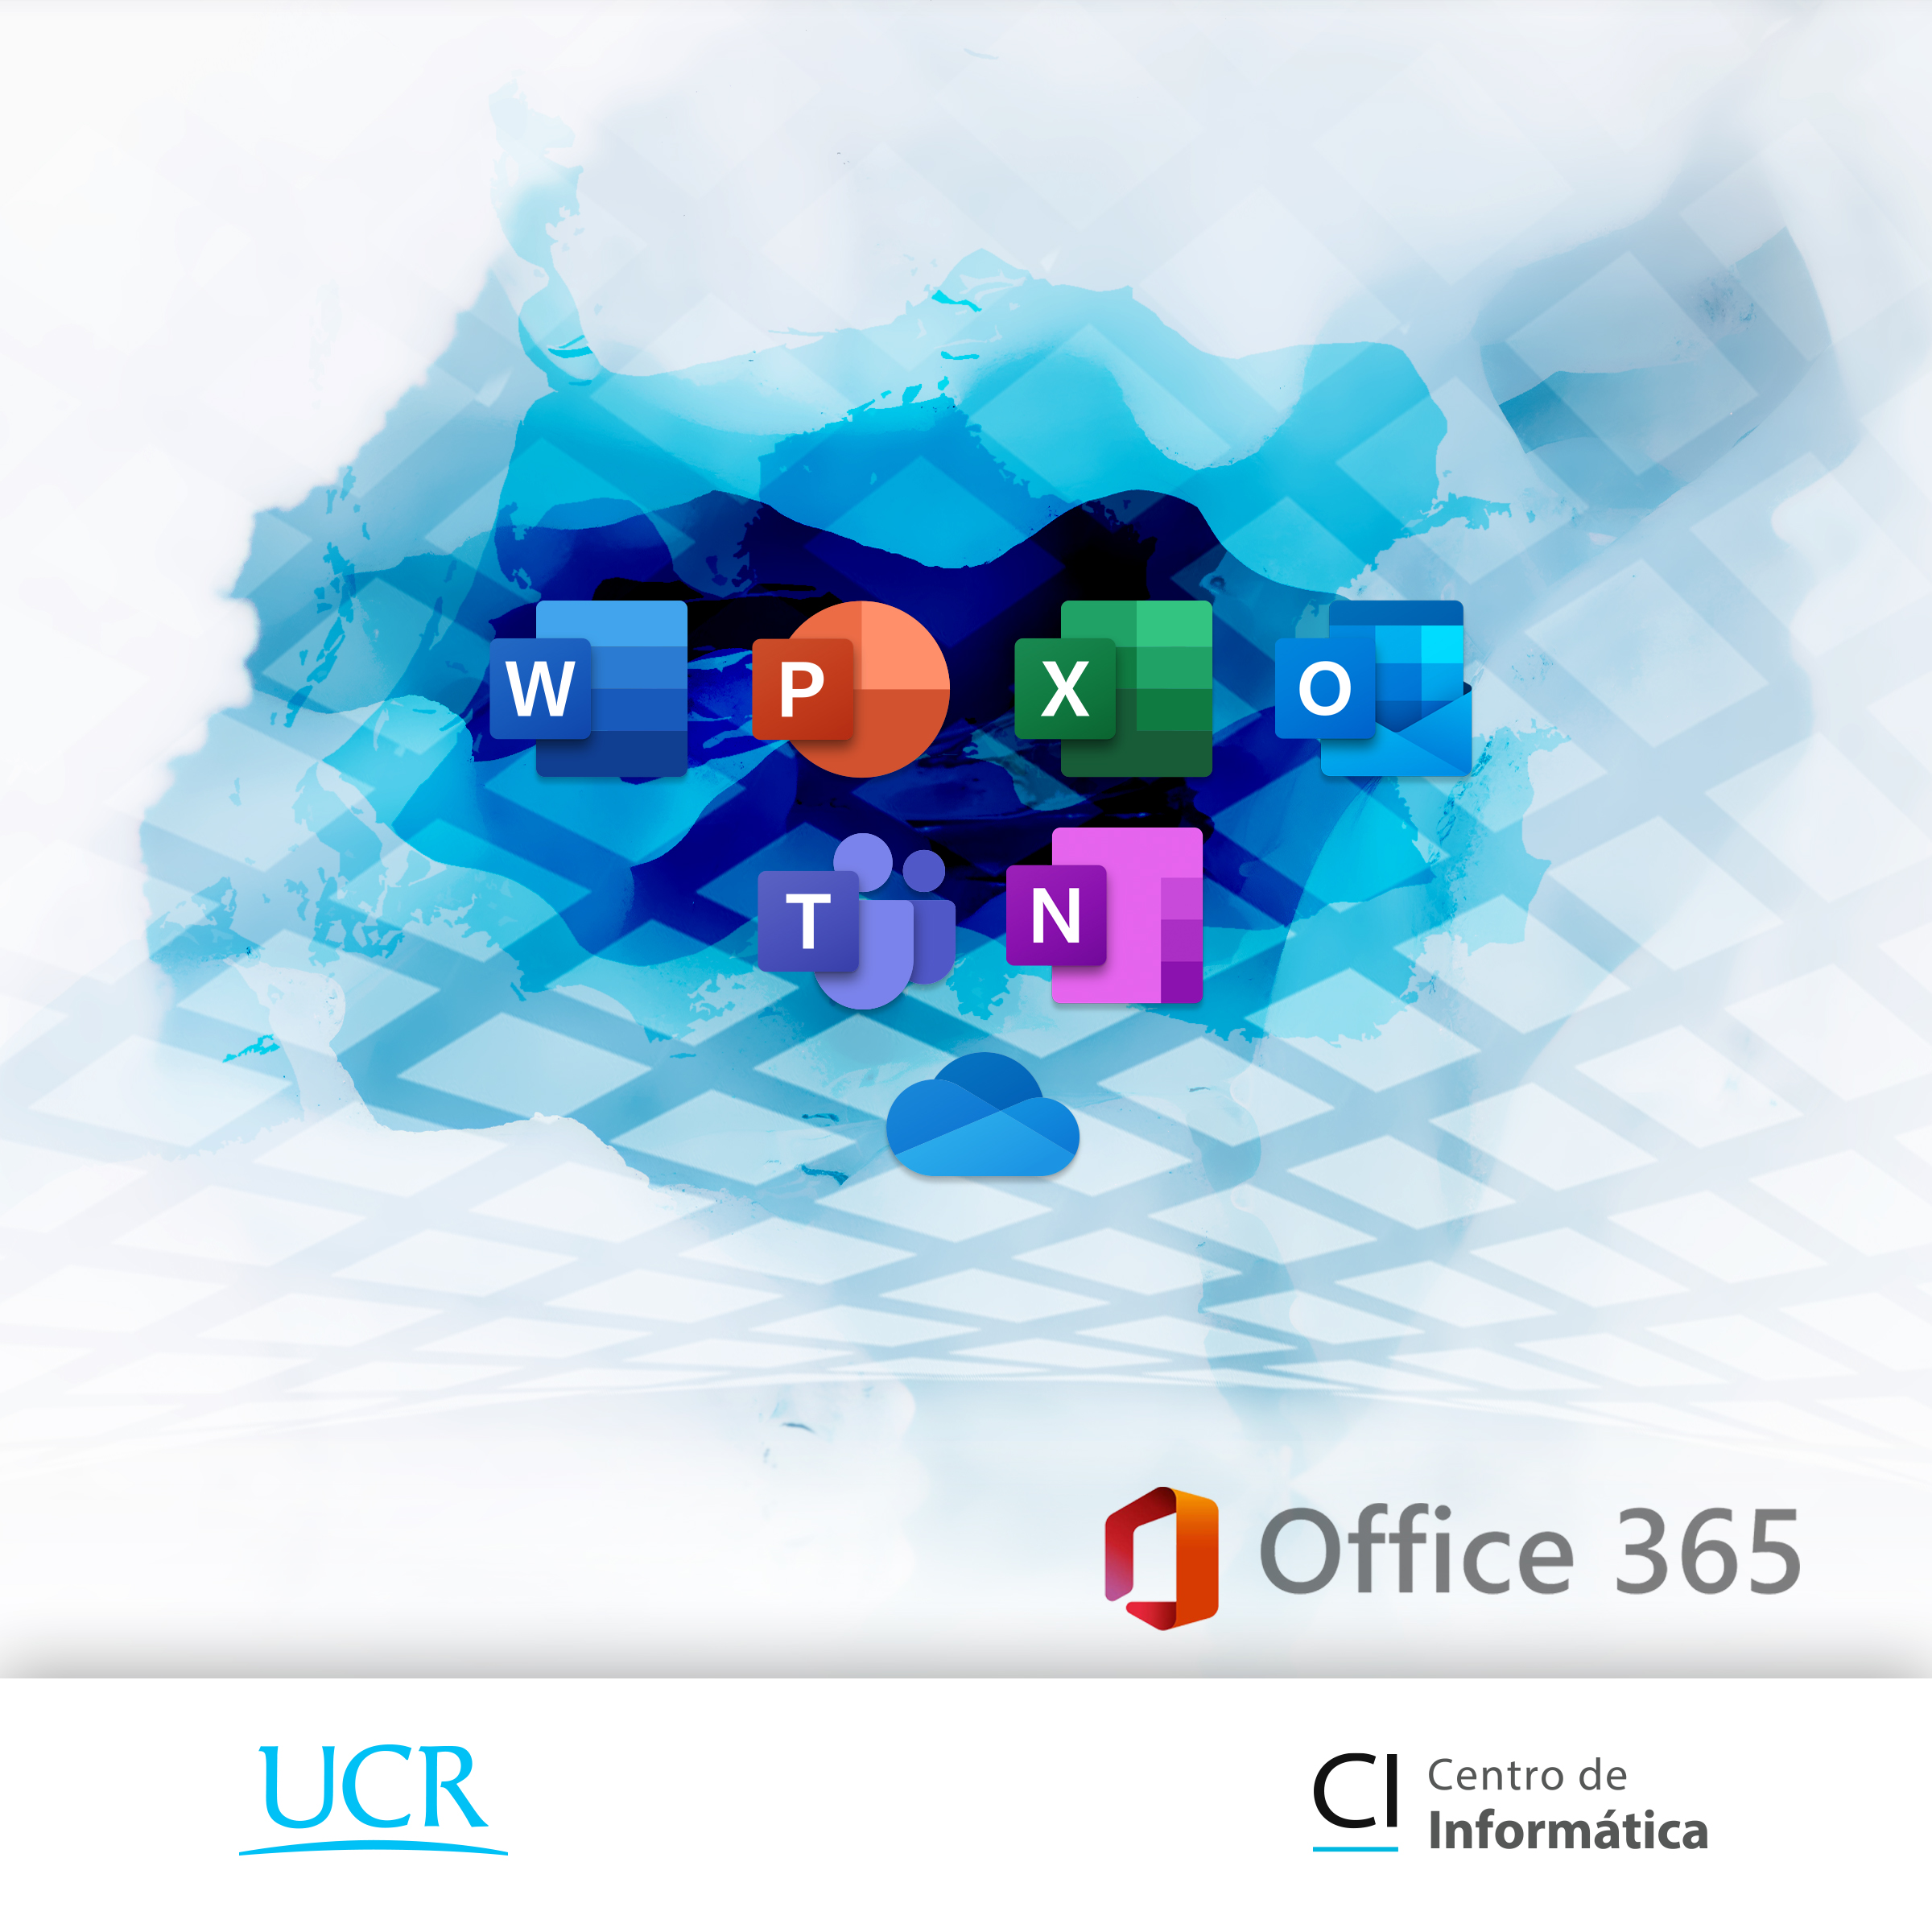 Imagen de los logos de las aplicaciones de office 365 más utilizadas como power Point, one drive, y excel entre otros